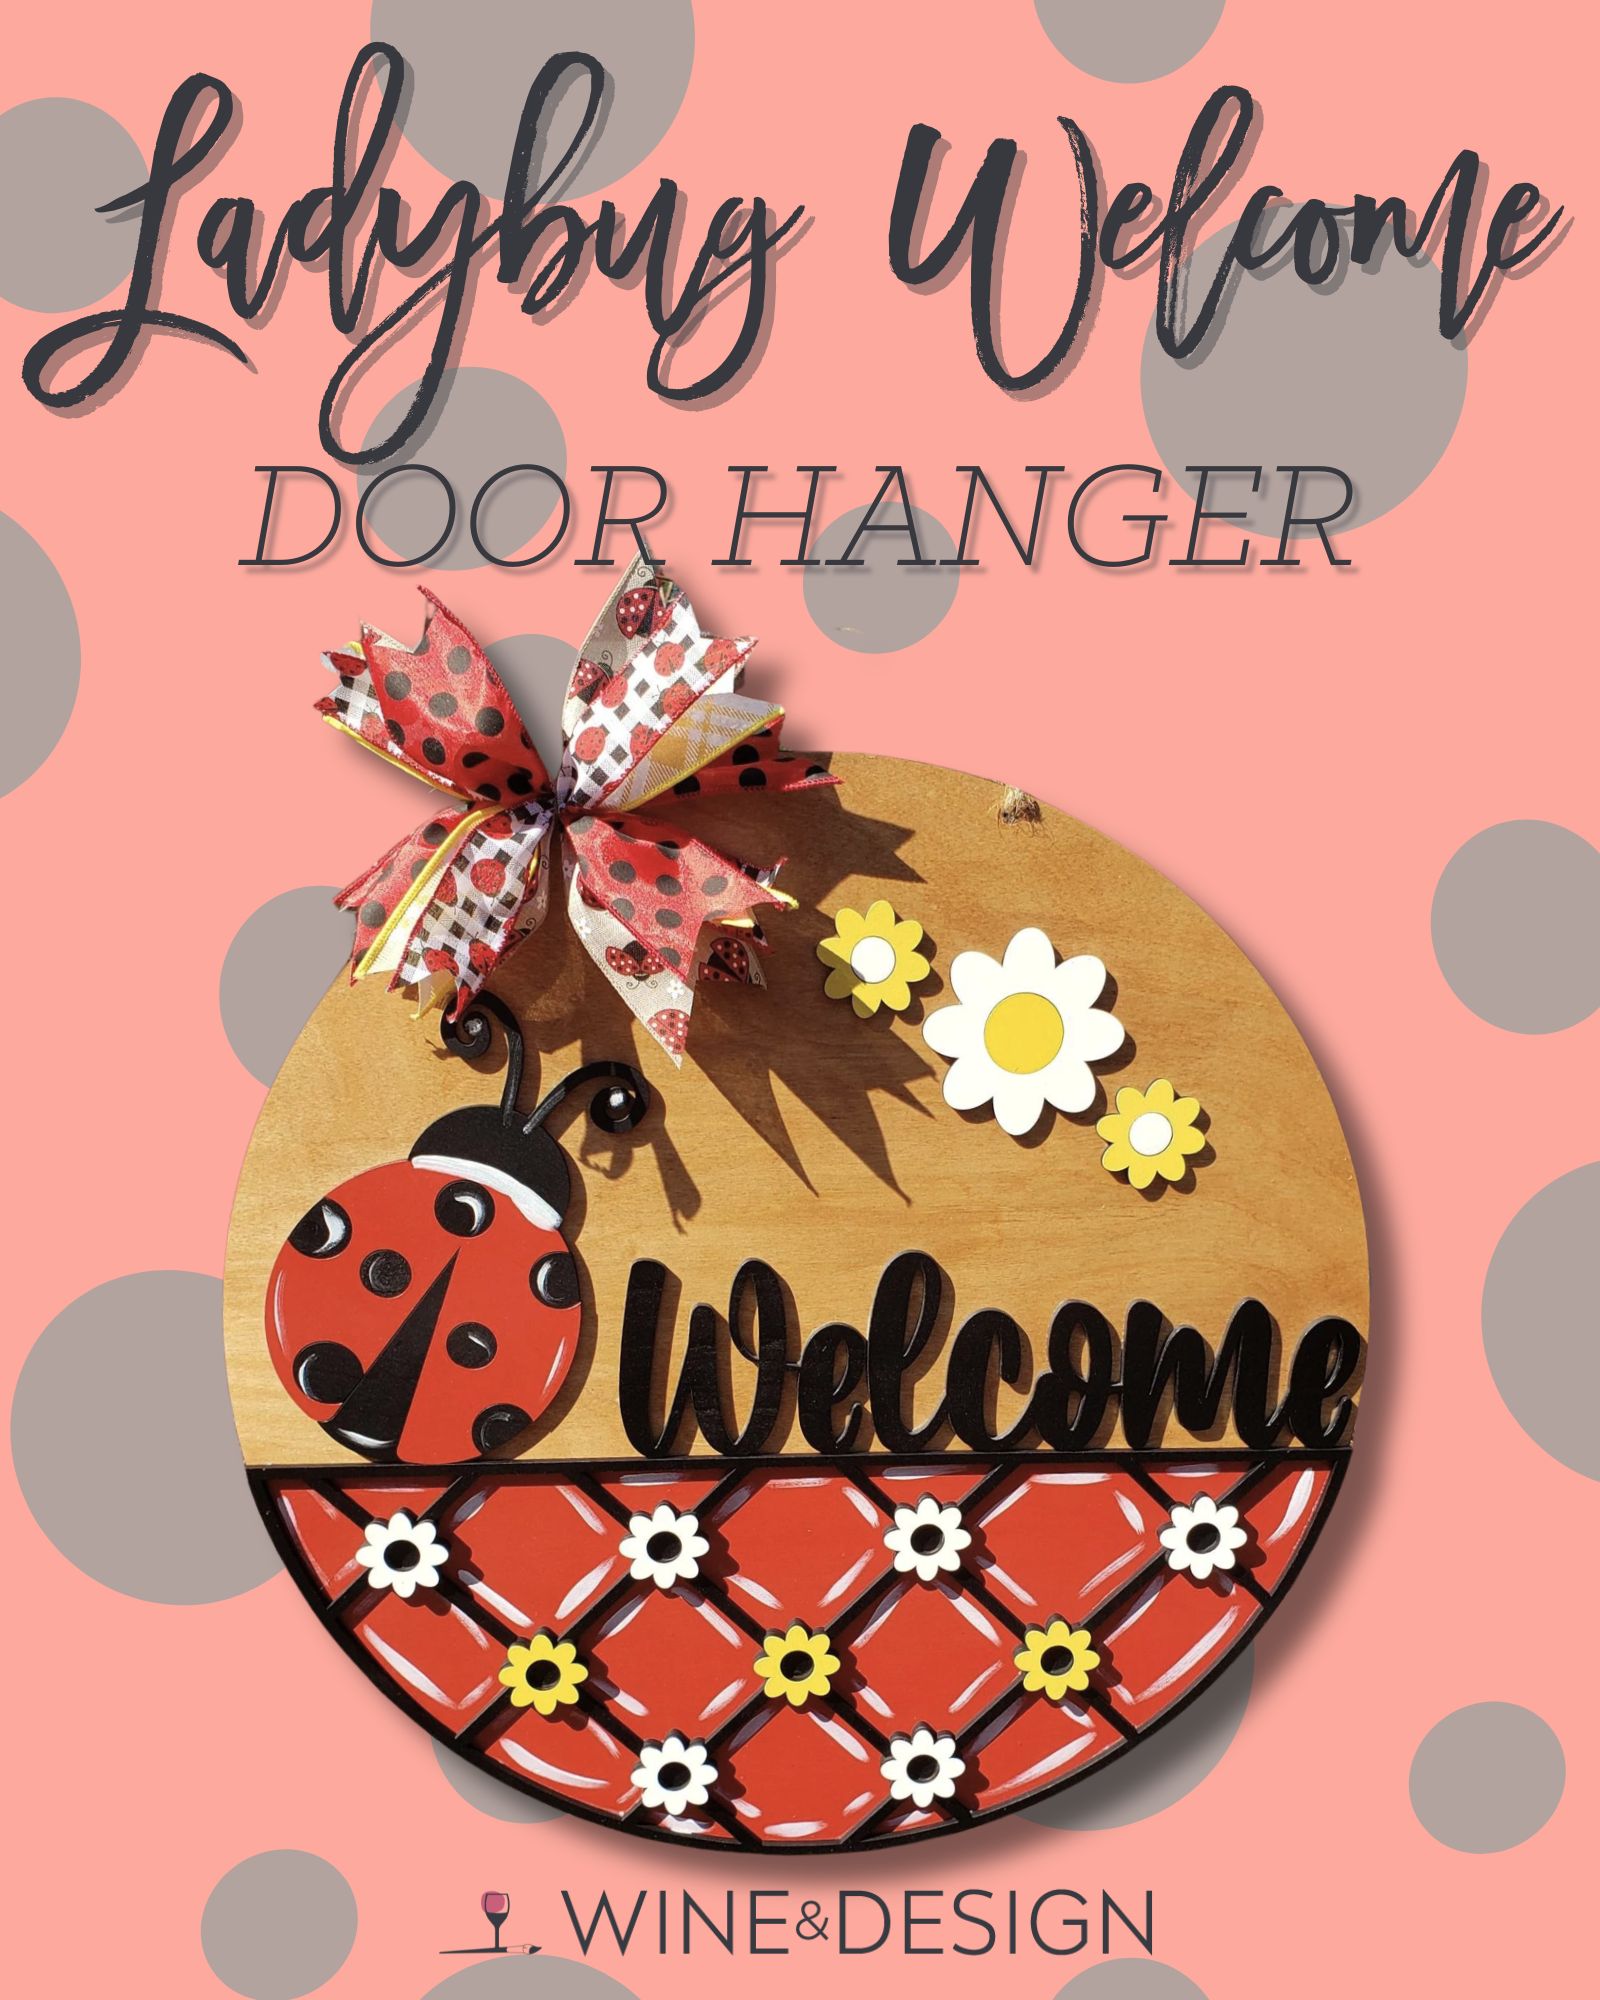 Ladybug Welcome Wooden Door Hanger